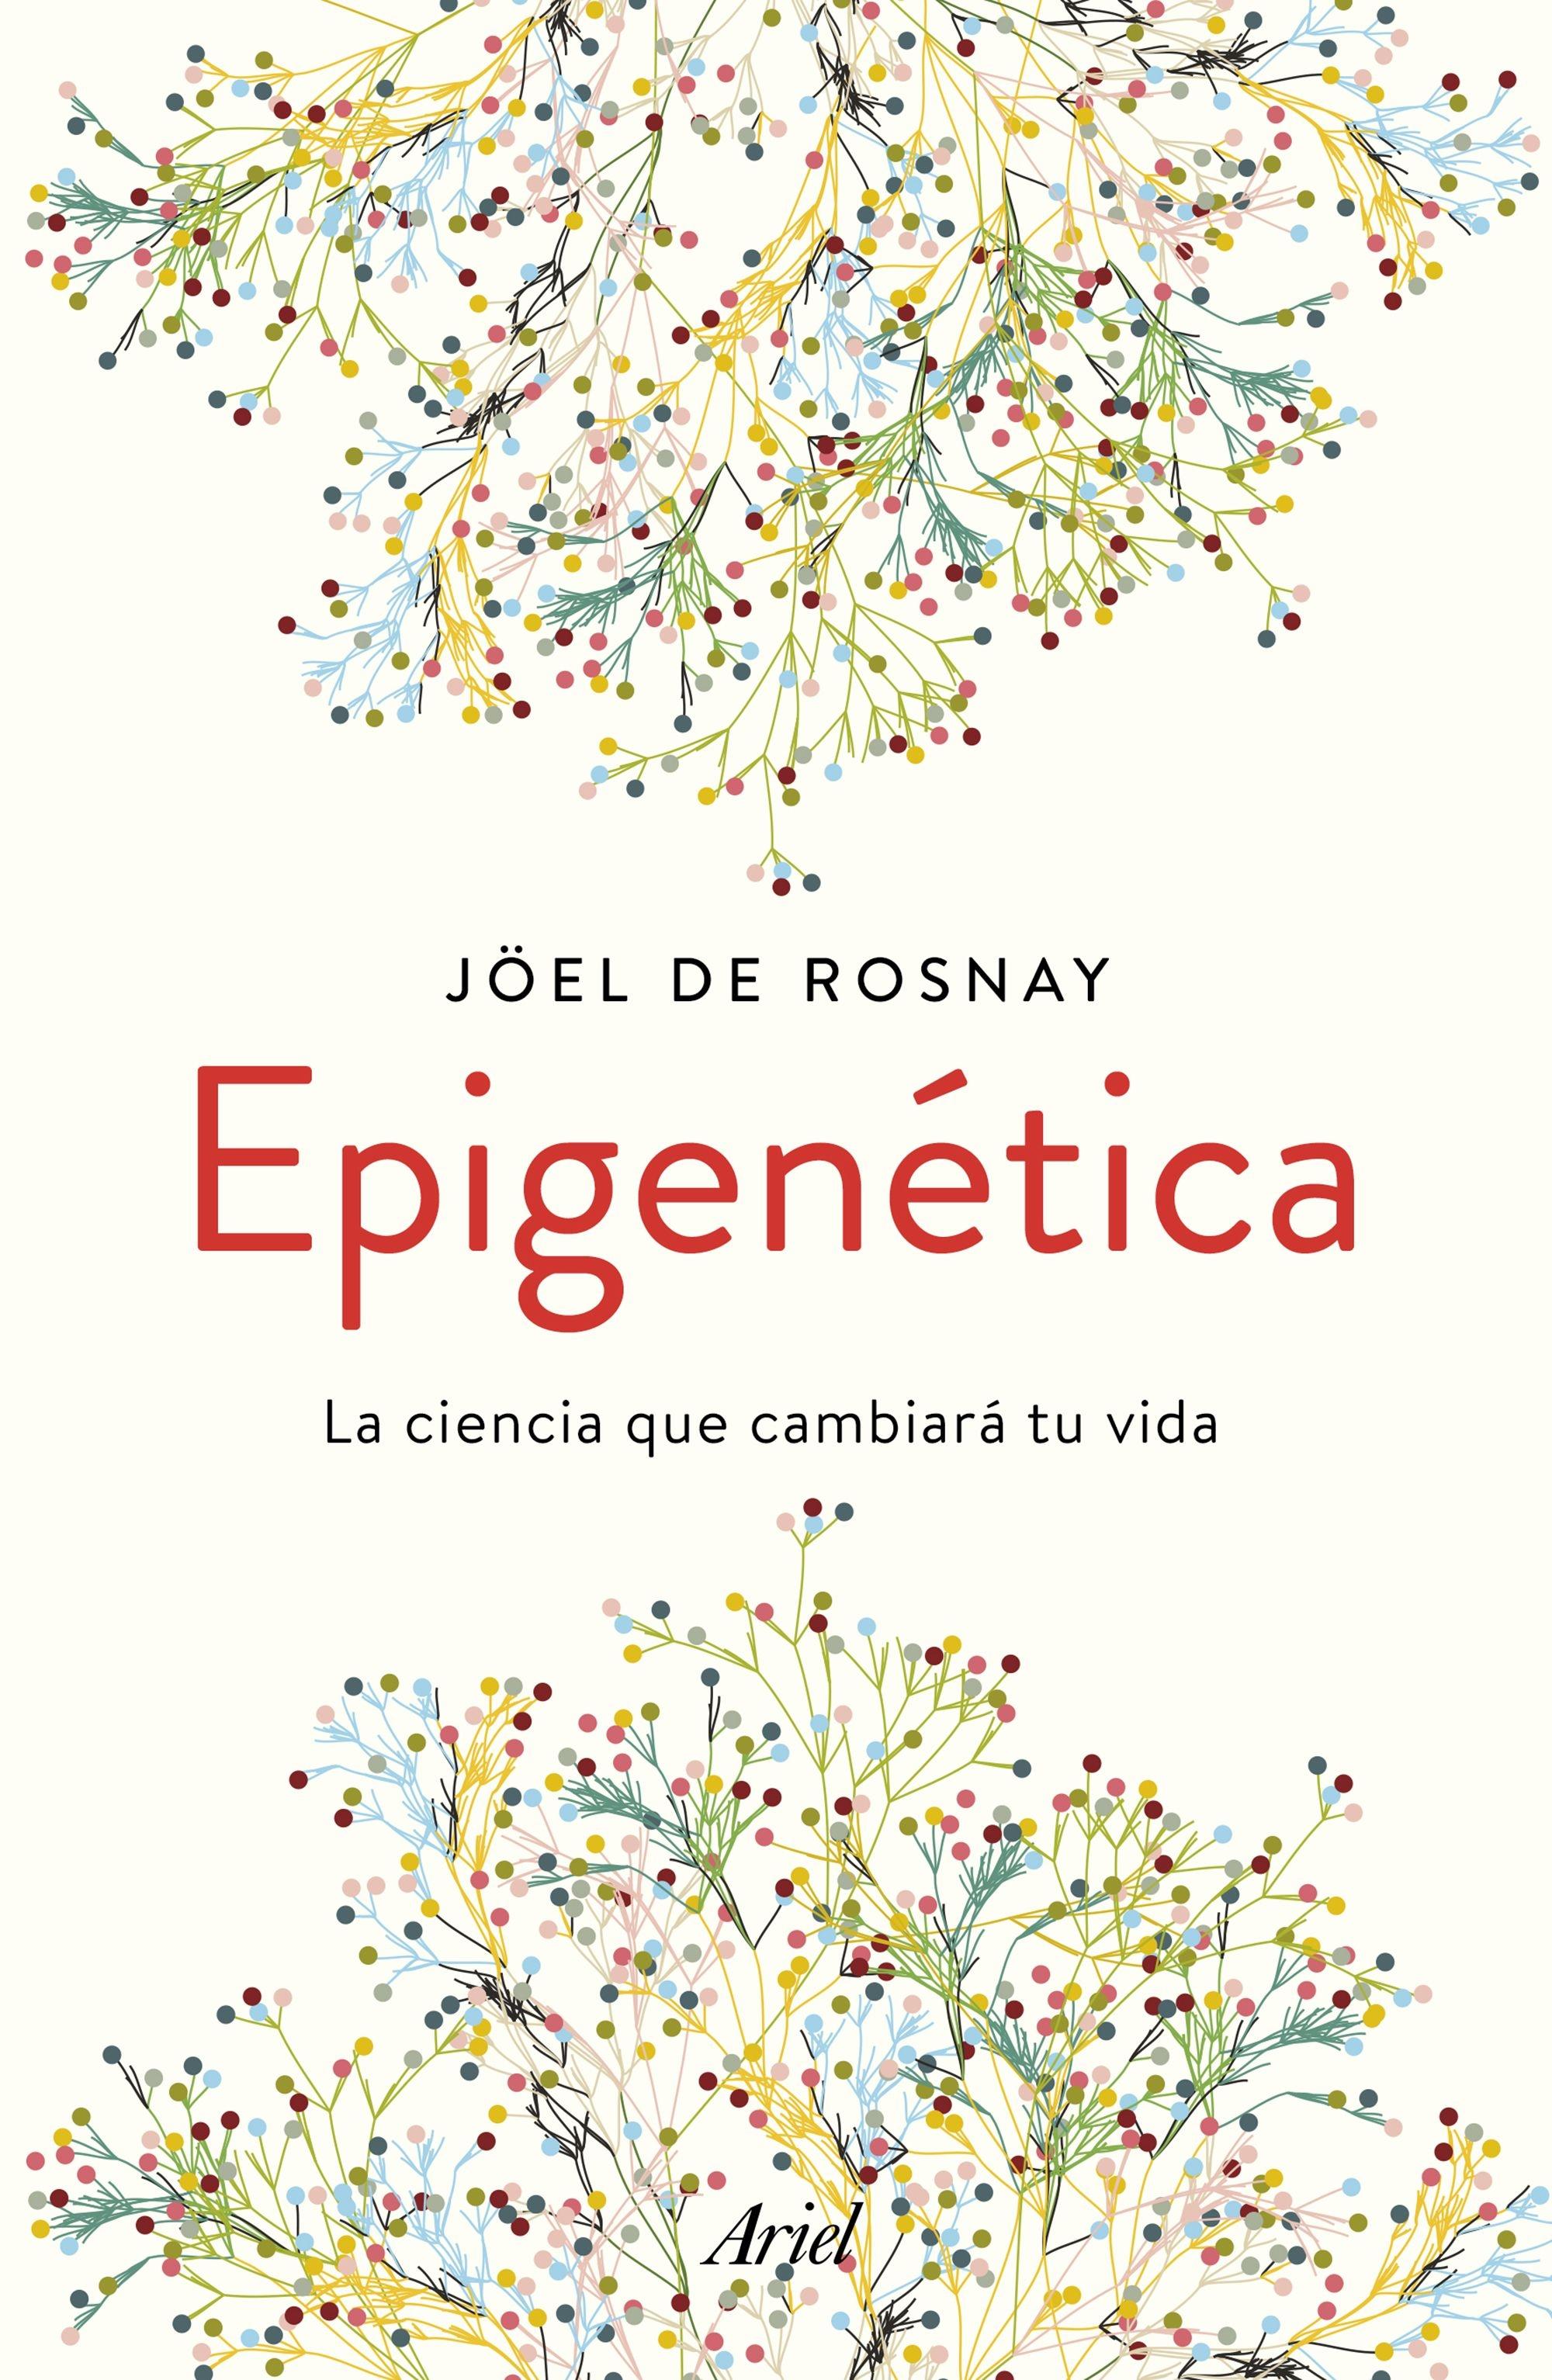 Epigenética "La ciencia que cambiará tu vida". 